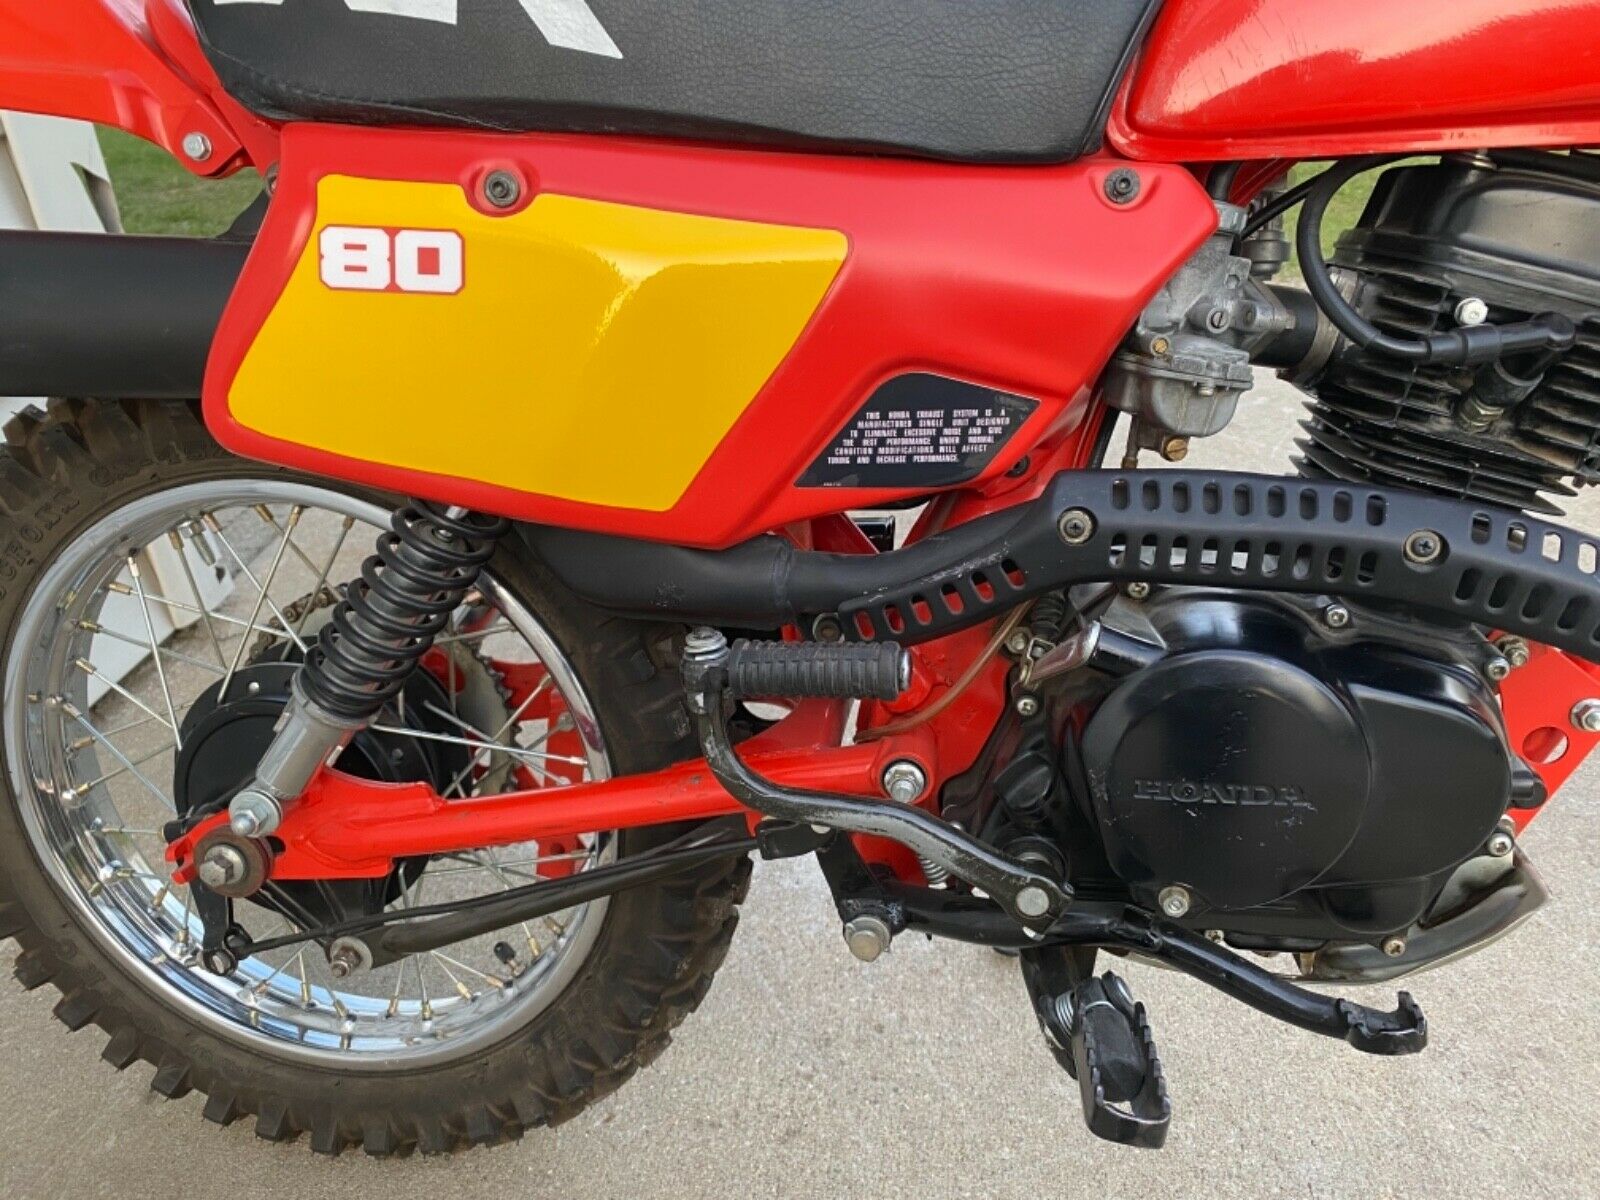 1981 honda 80